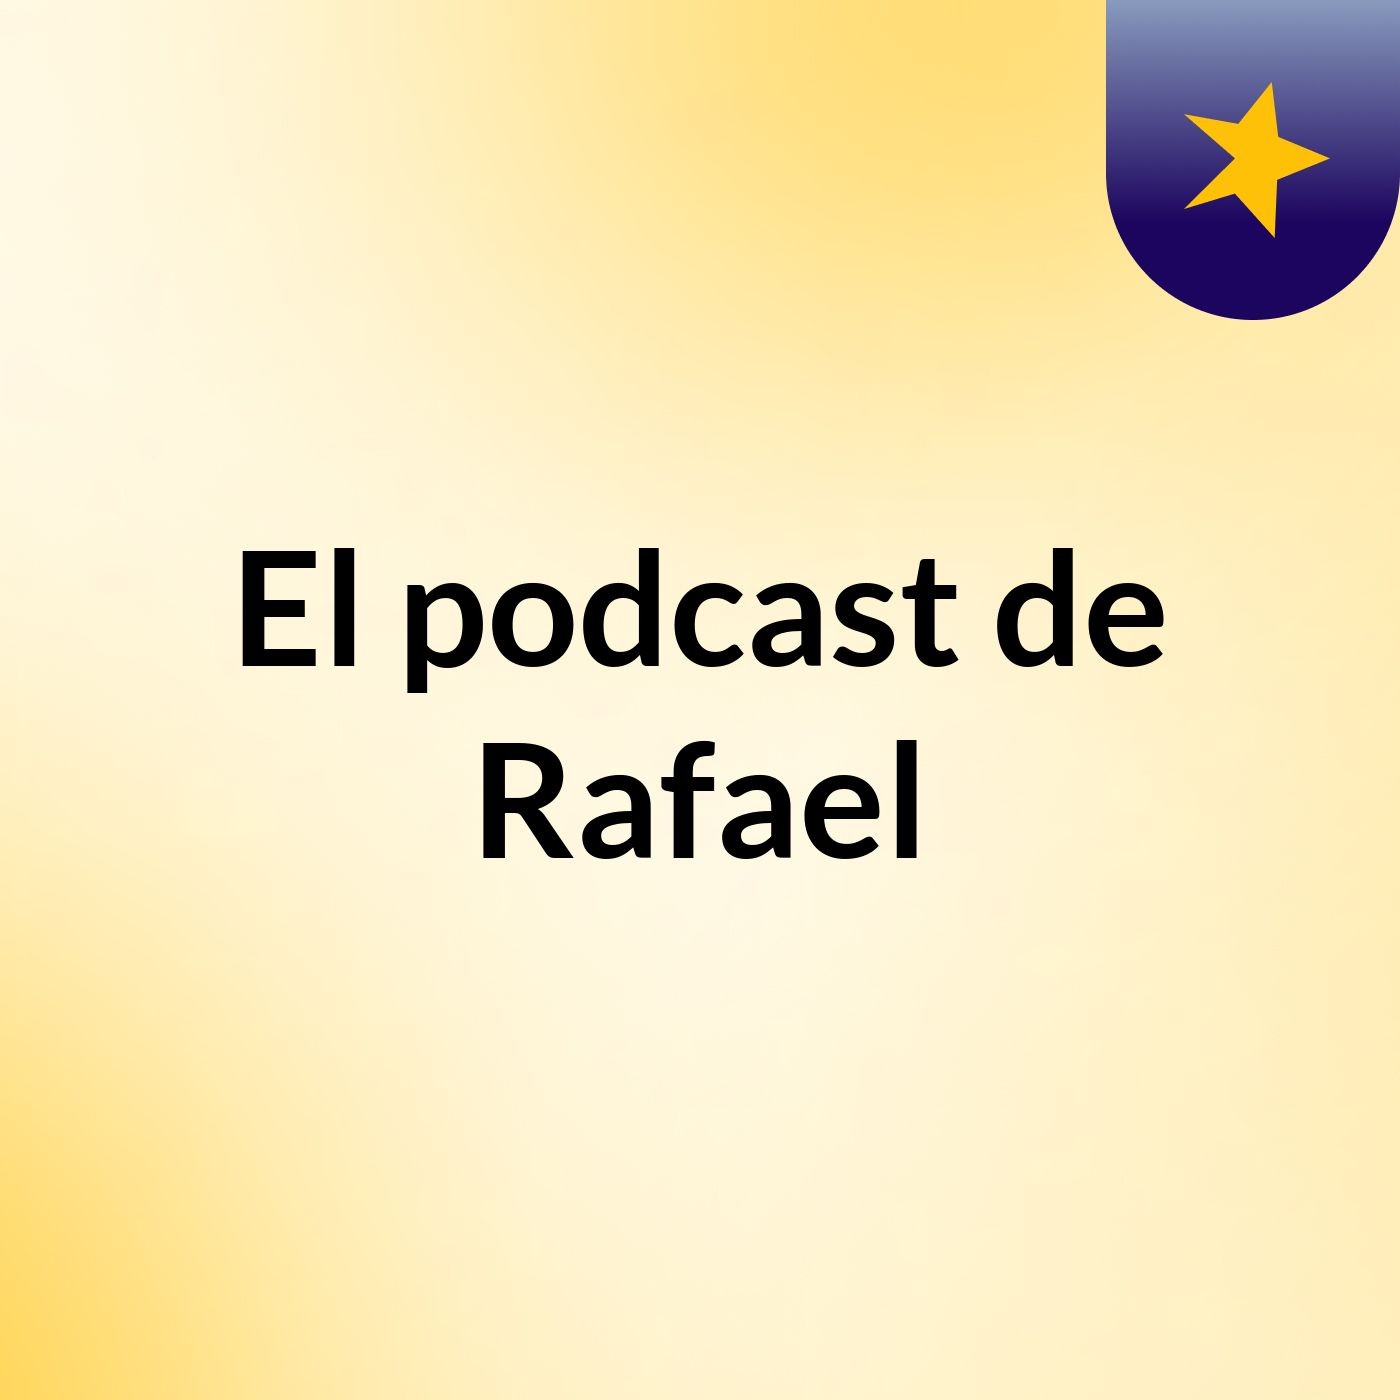 El podcast de Rafael